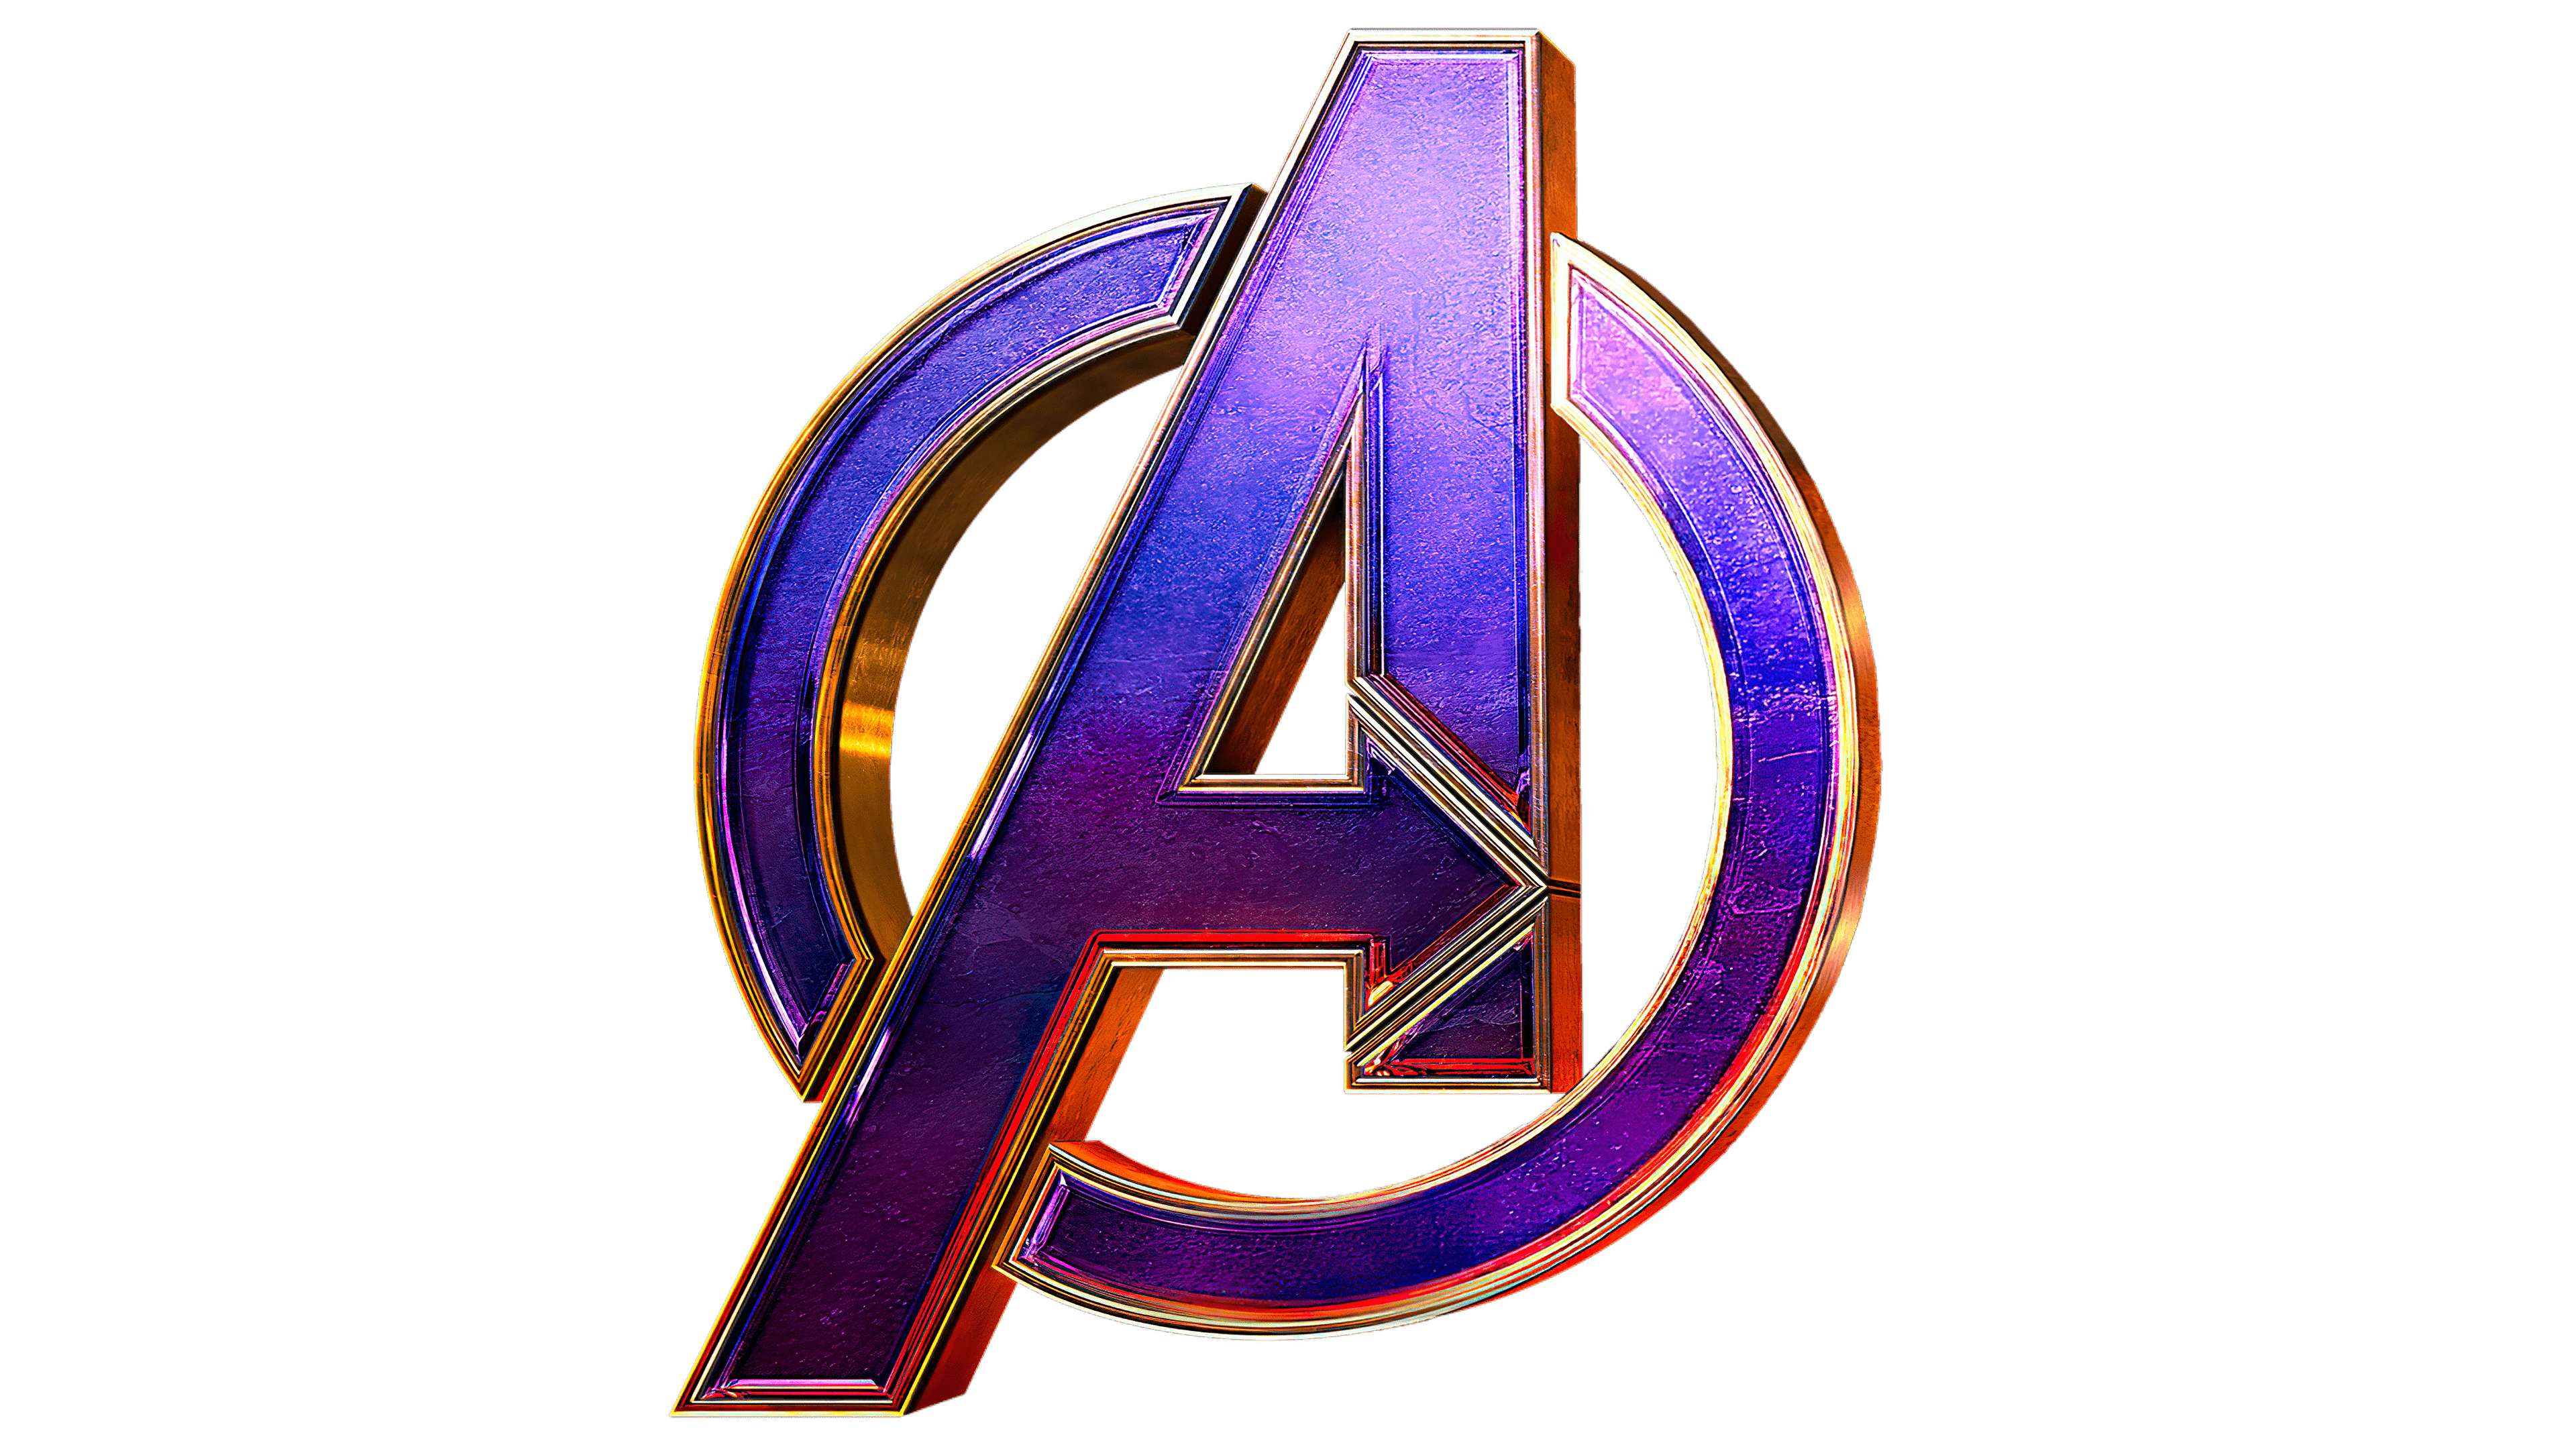 Avengers logo drawing | Avengers logo, Avengers drawings, Avengers poster